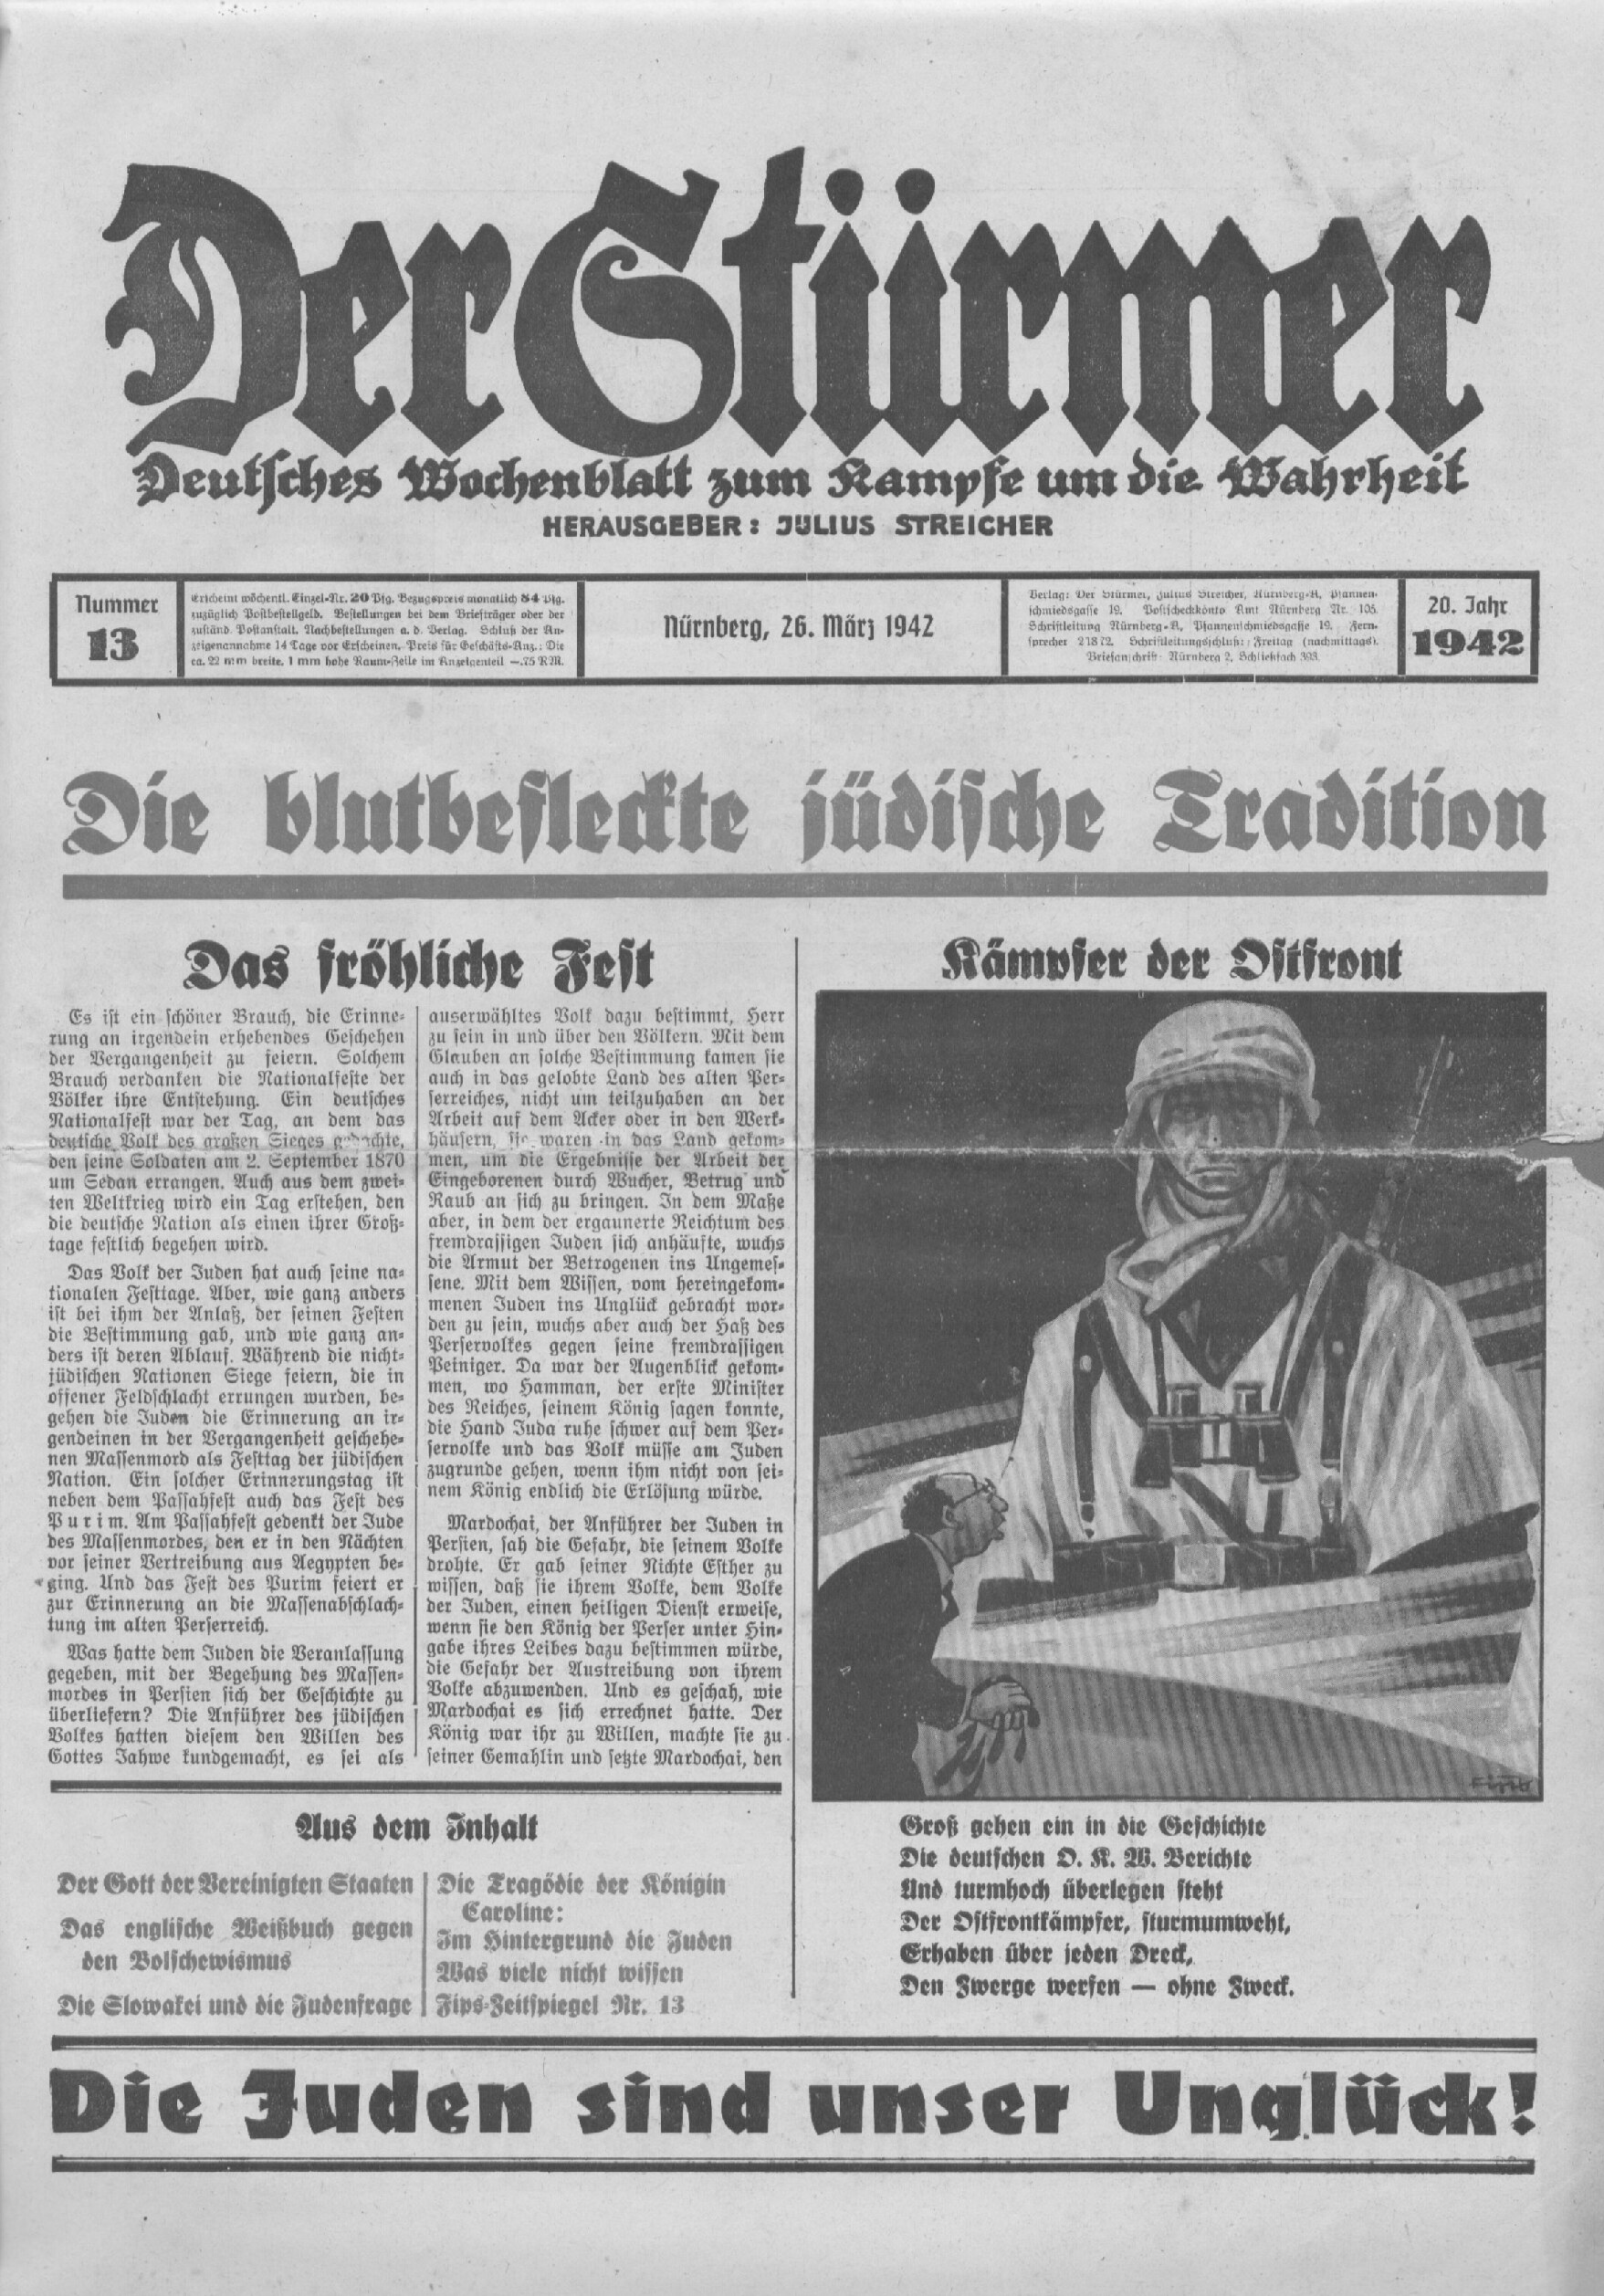 Der Stürmer - 1942 Nr. 13 - Die blutbefleckte jüdische Tradition